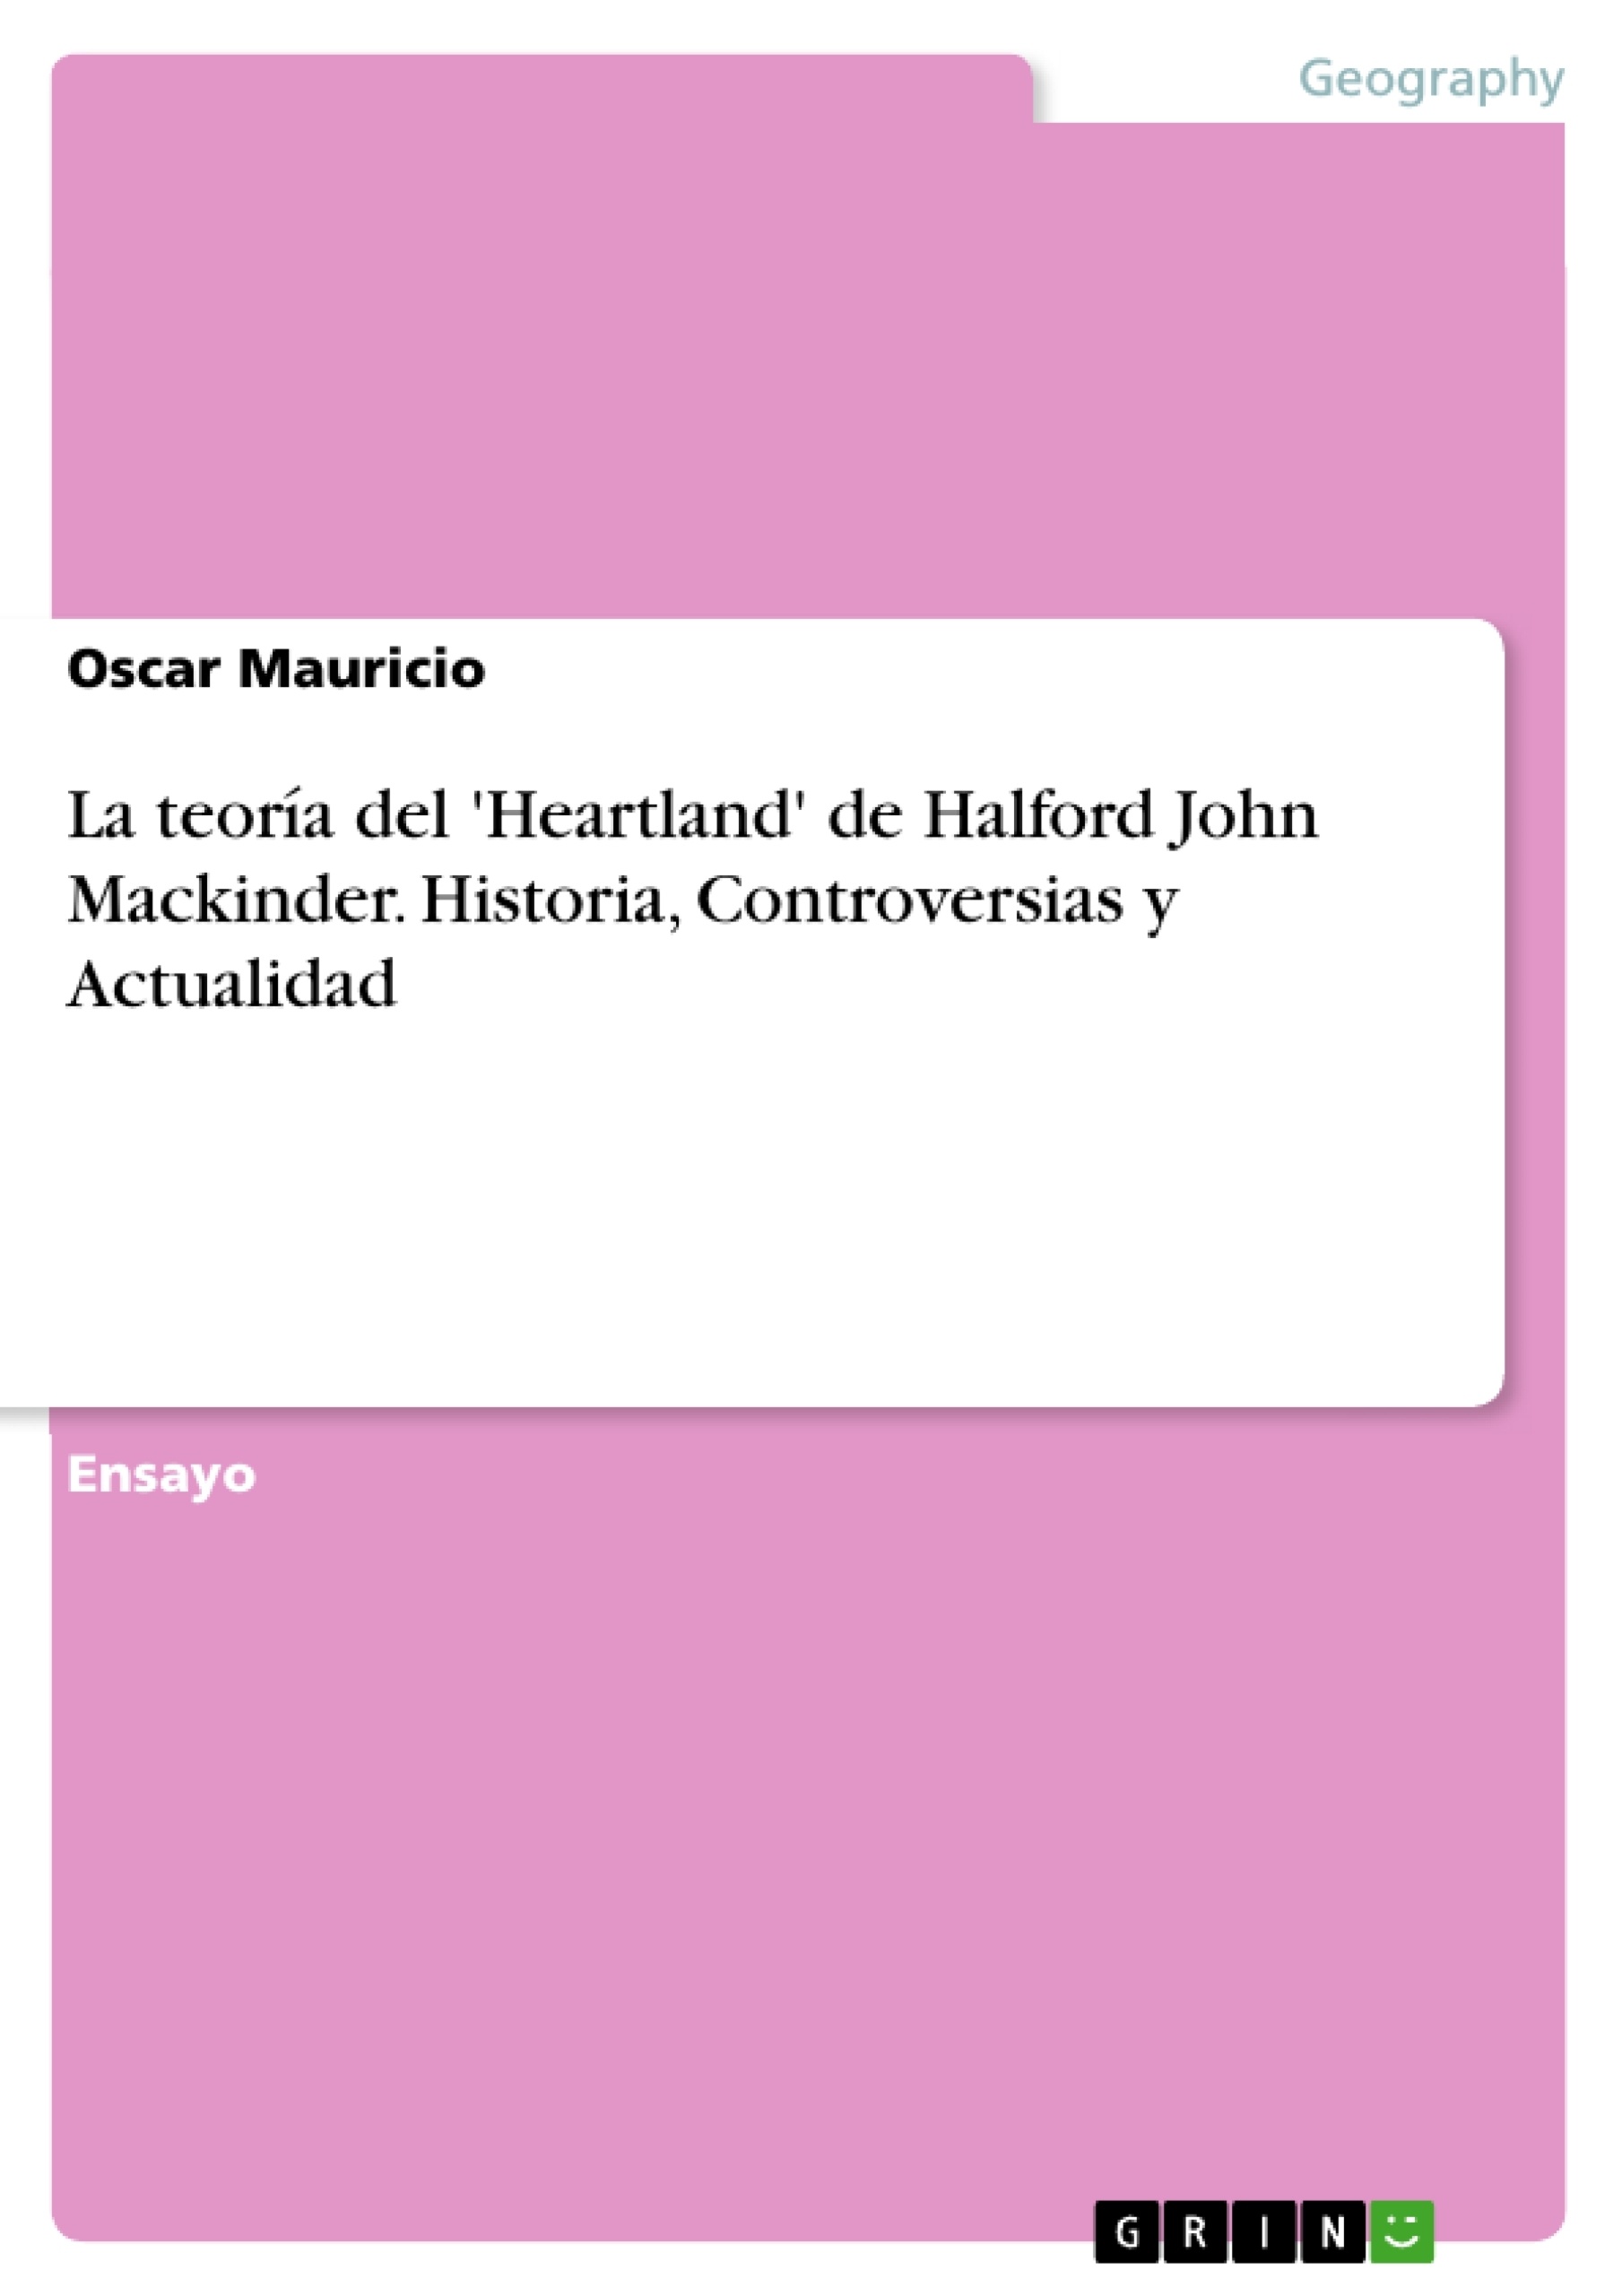 Título: La teoría del 'Heartland' de Halford John Mackinder. Historia, Controversias y Actualidad